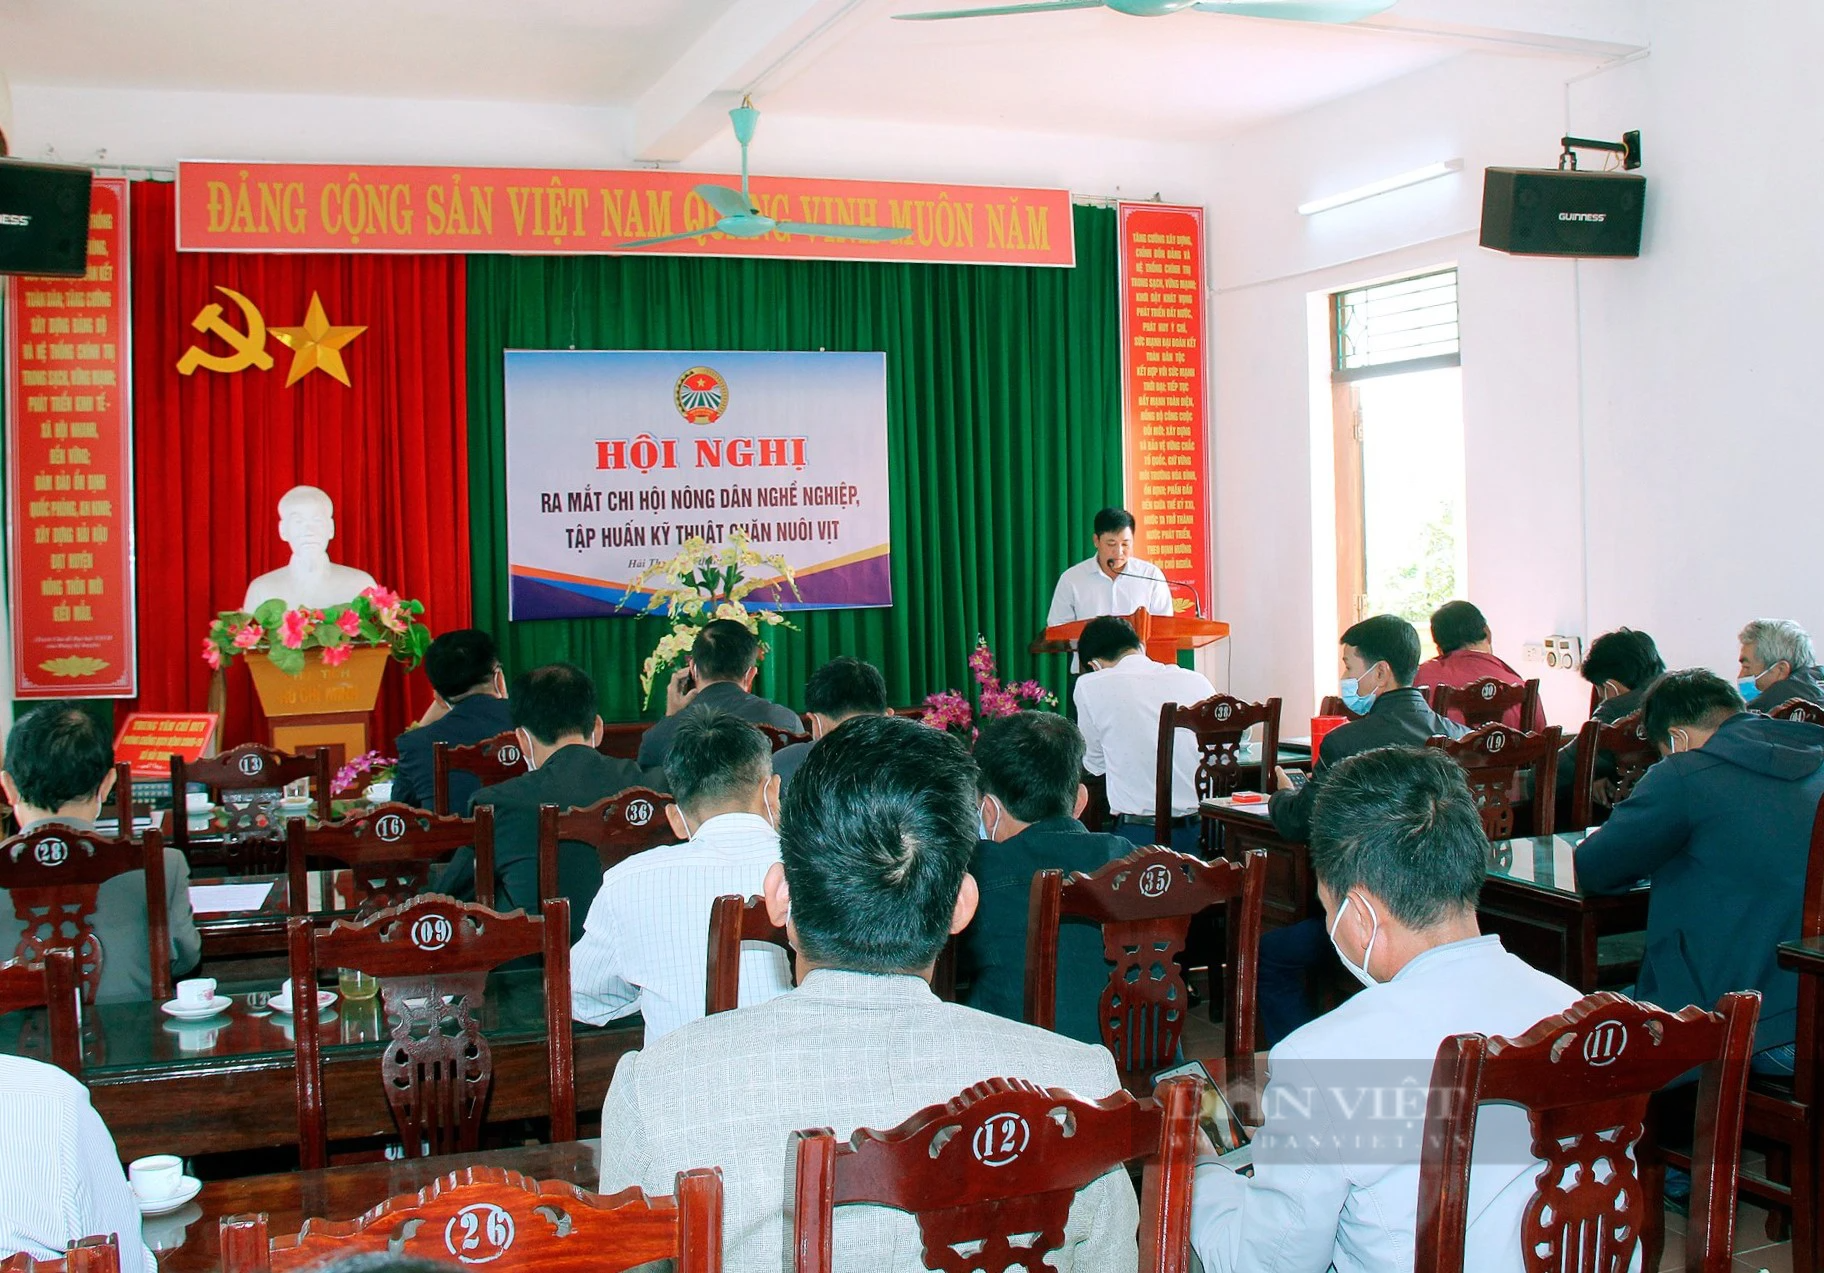 Nguồn vốn từ Quỹ Hỗ trợ nông dân đang góp phần phát triển nông nghiệp, nông thôn ở Nam Định- Ảnh 1.